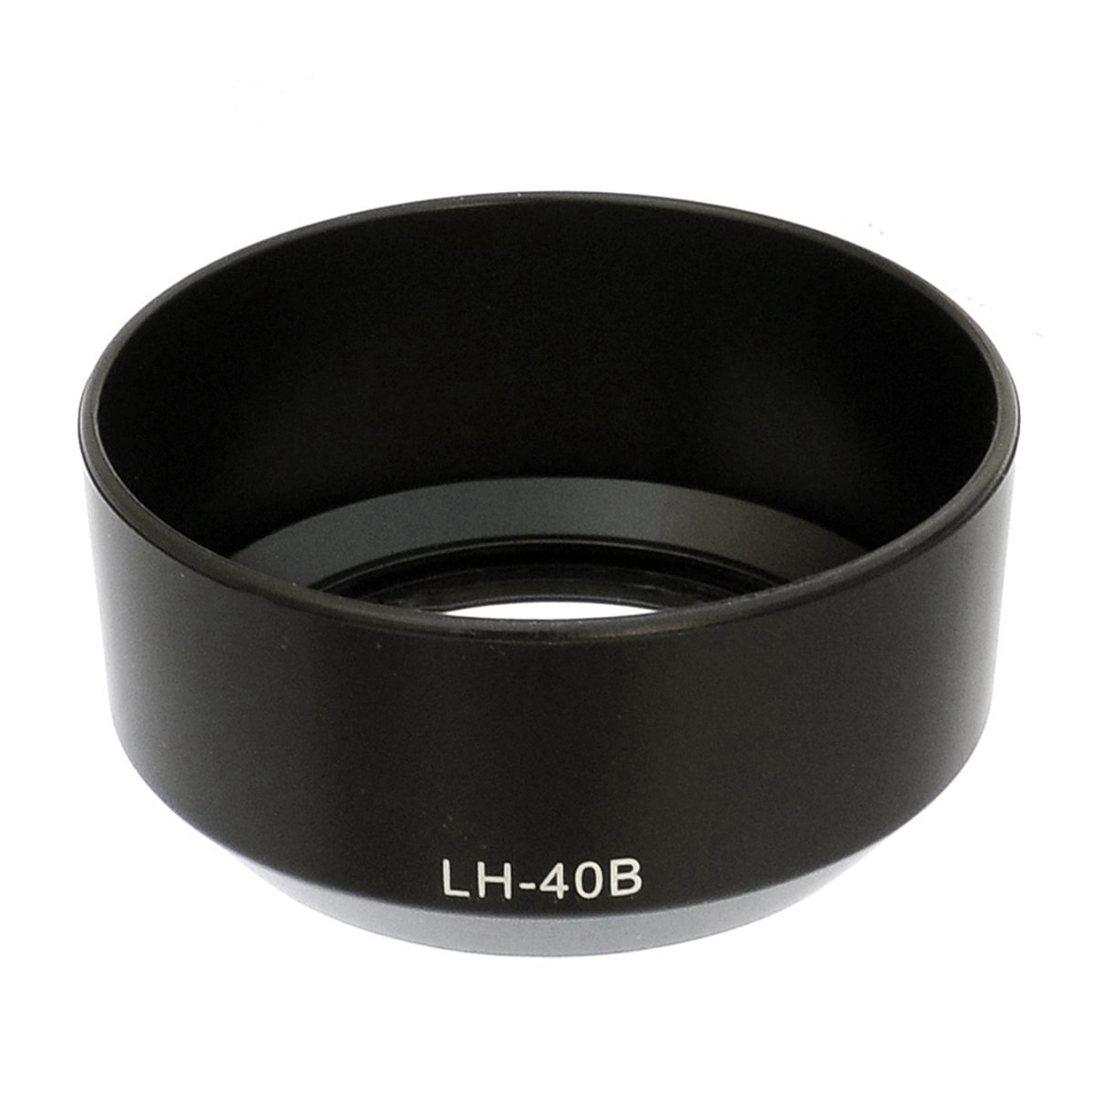 เลนส์ฮู้ด Lens hood Olympus M.ZUIKO DIGITAL 45mm f/1.8 Lens OLYMPUS LH-40B